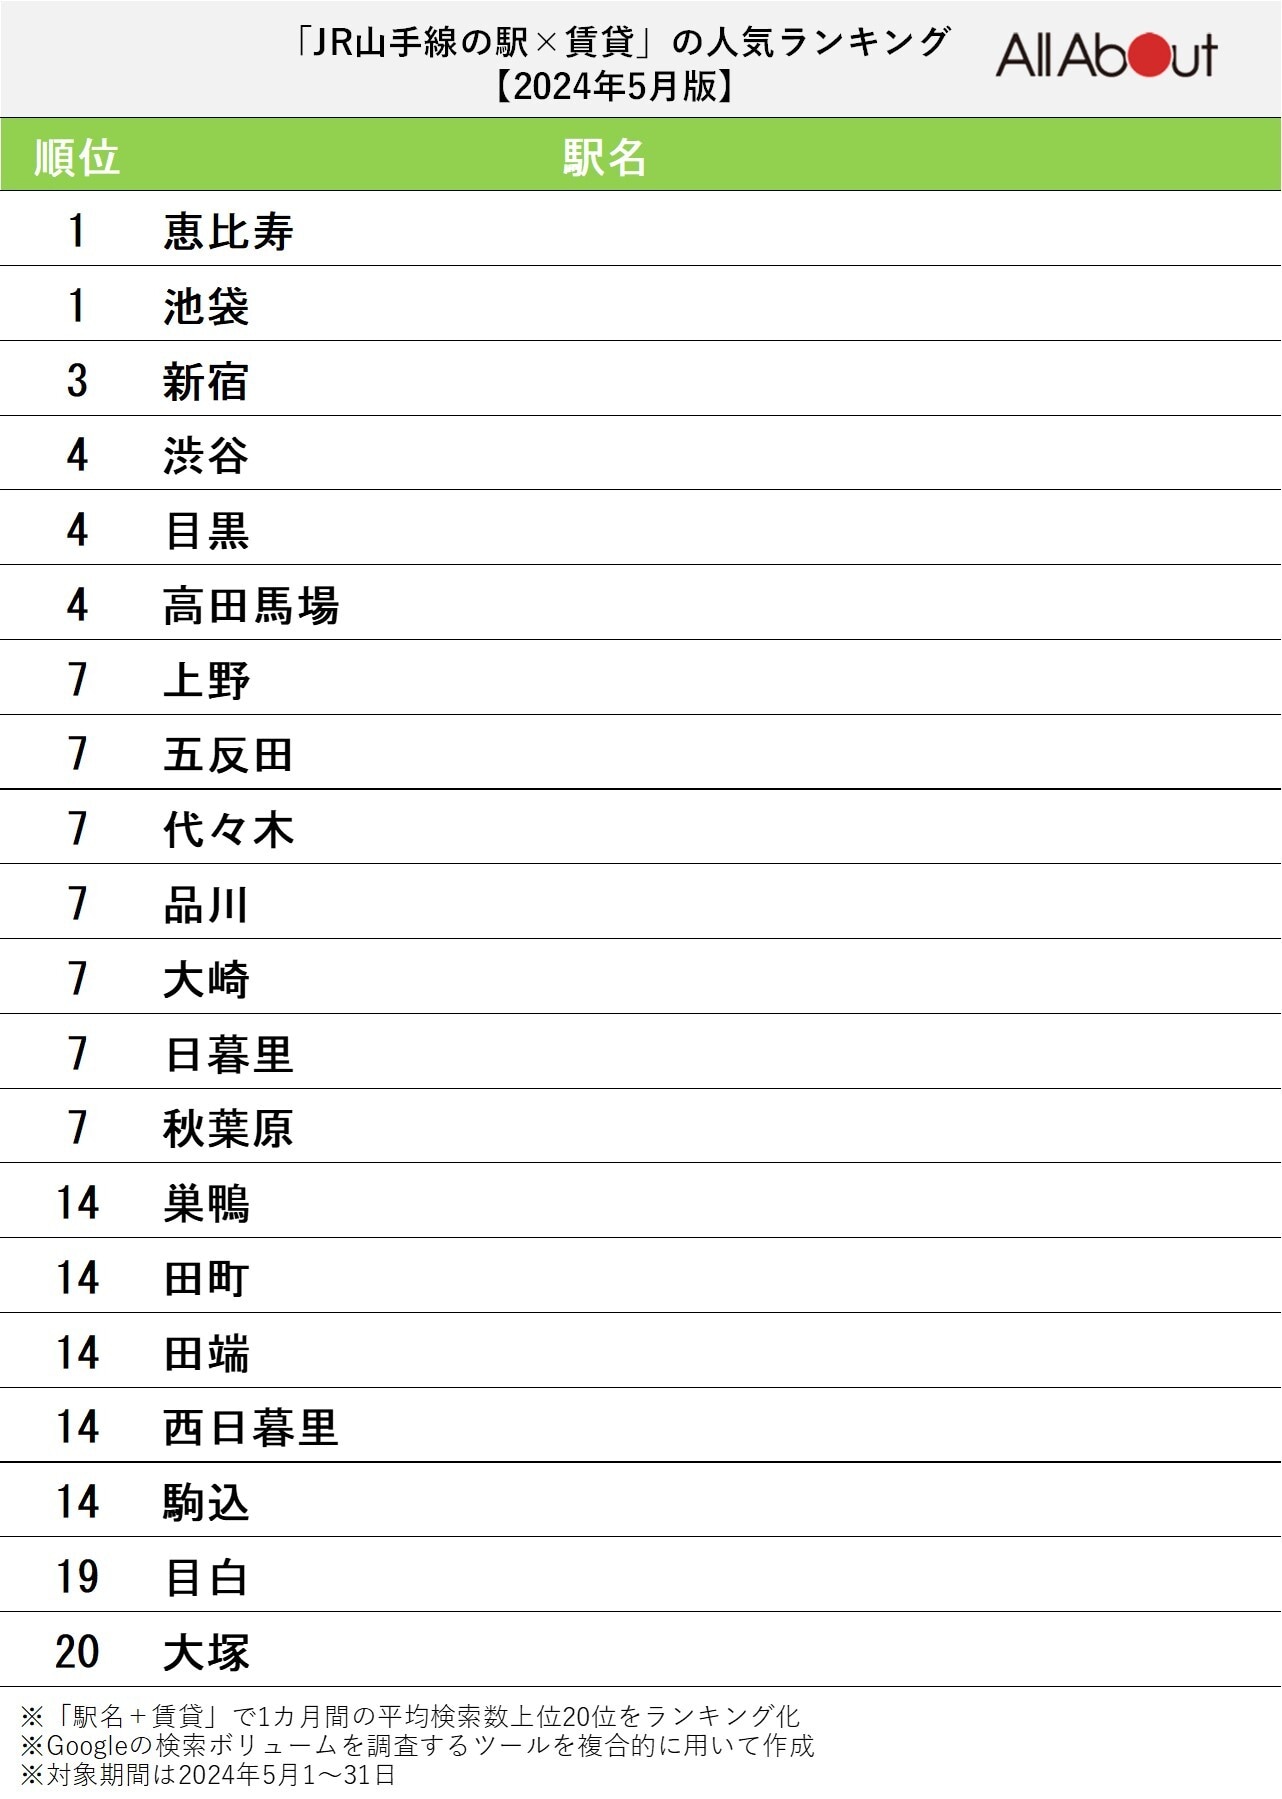 【2024年5月版】「JR山手線の駅×賃貸」の検索数人気ランキング